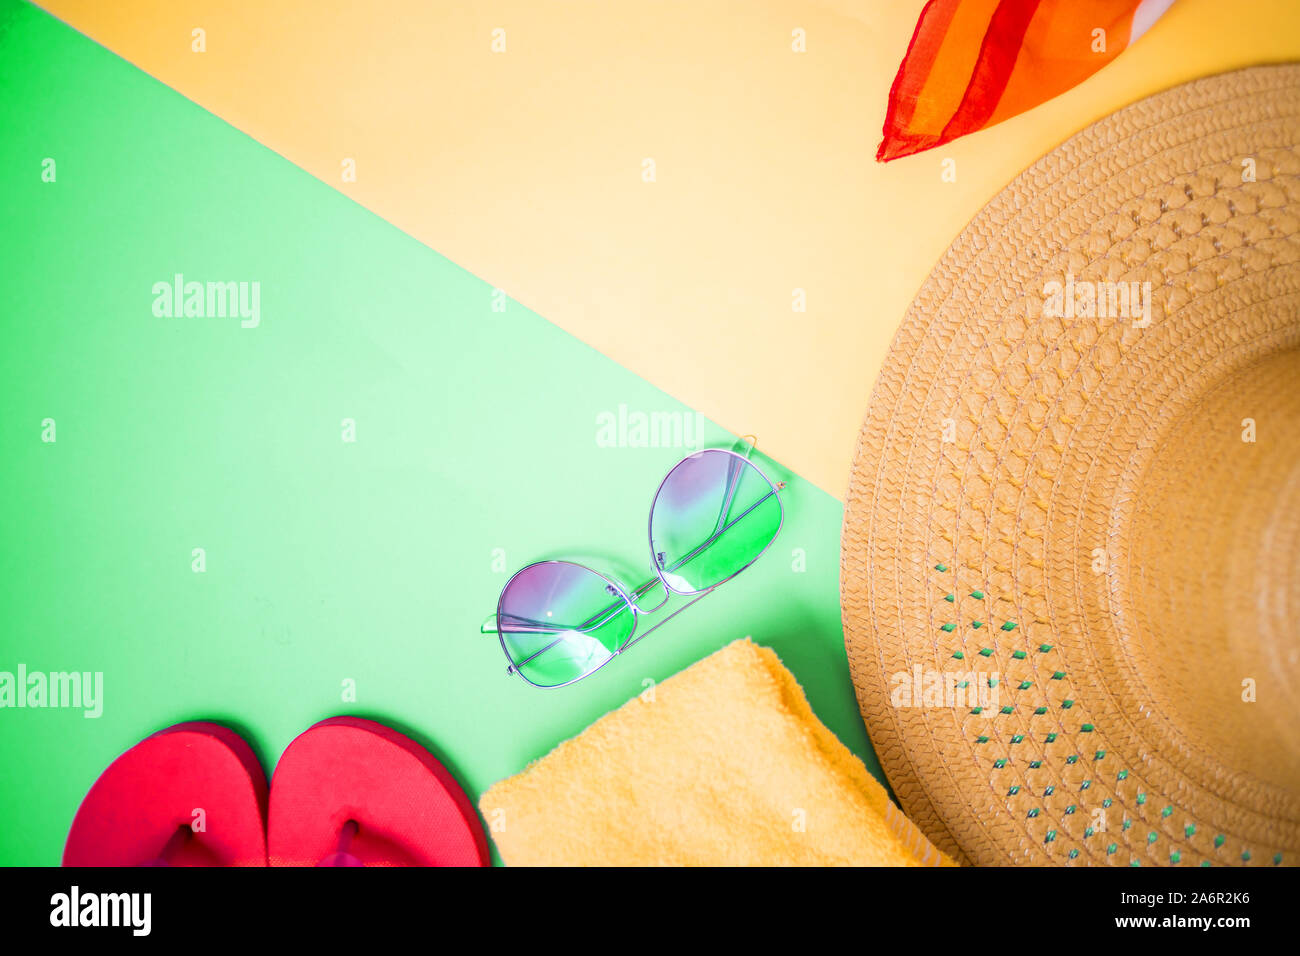 Lunettes de soleil, serviette, tongs rose vif sur fond vert et jaune clair. Vue de dessus, copiez l'espace pour le texte. Accessoires de plage, été, vacances. Banque D'Images